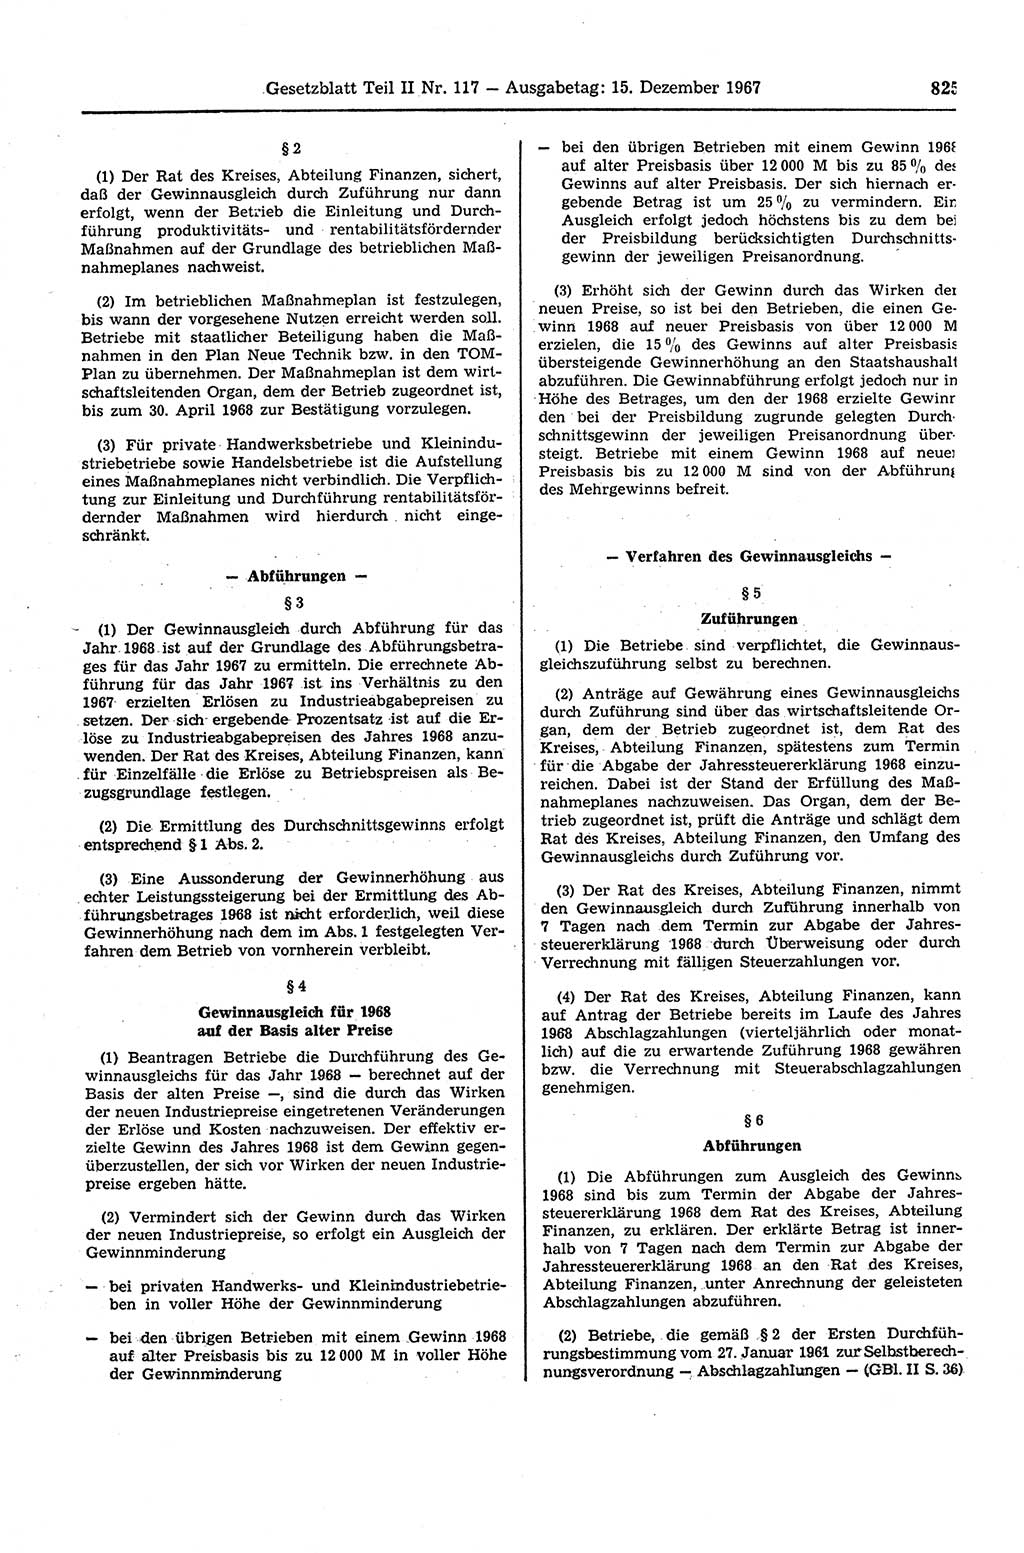 Gesetzblatt (GBl.) der Deutschen Demokratischen Republik (DDR) Teil ⅠⅠ 1967, Seite 825 (GBl. DDR ⅠⅠ 1967, S. 825)